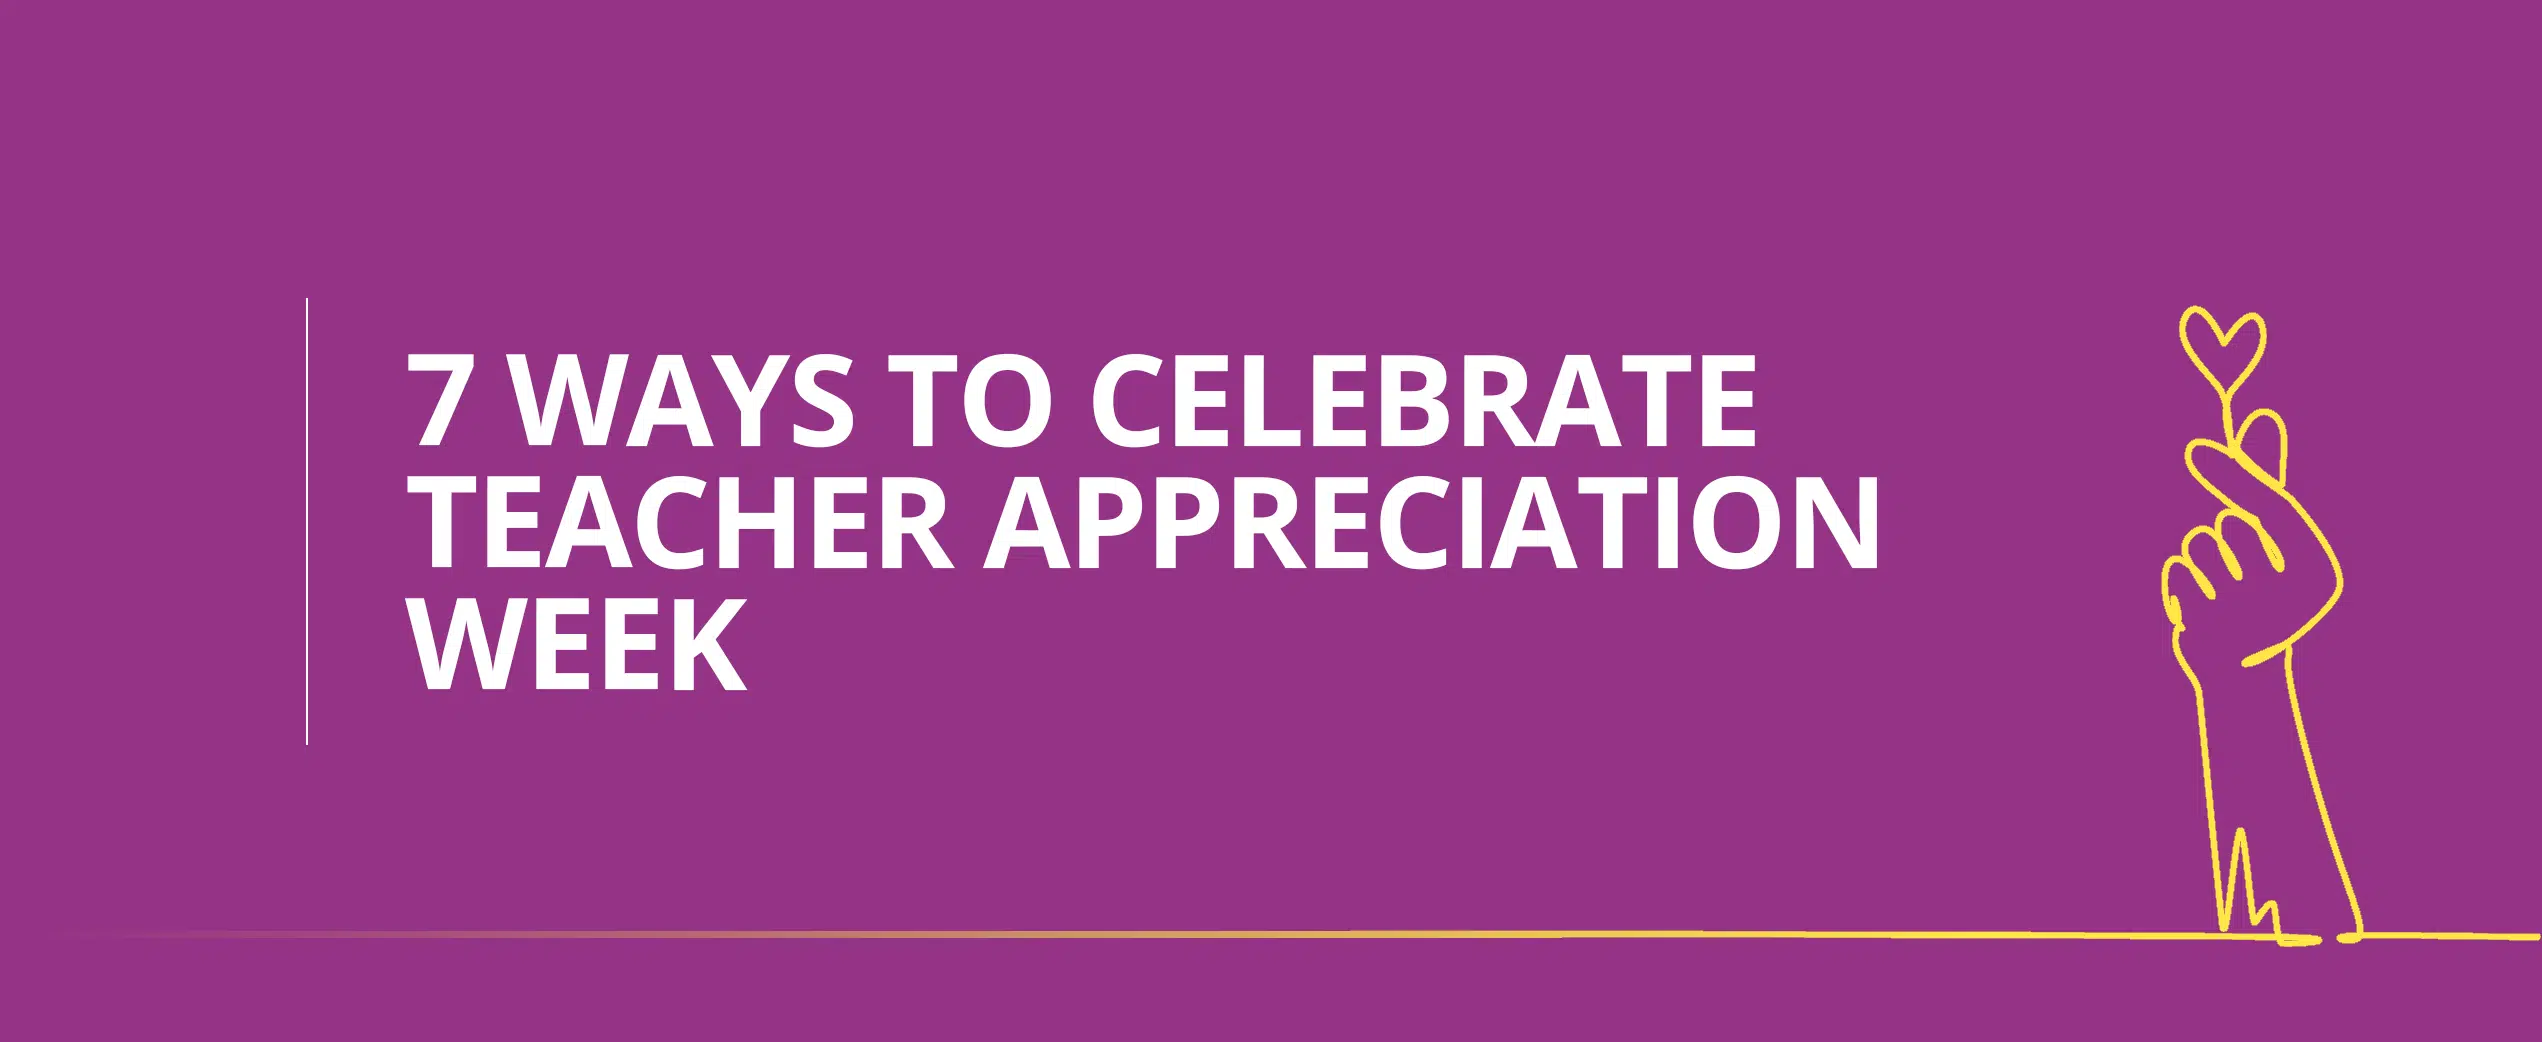 7 ways to celebrate Teacher Appreciation Week